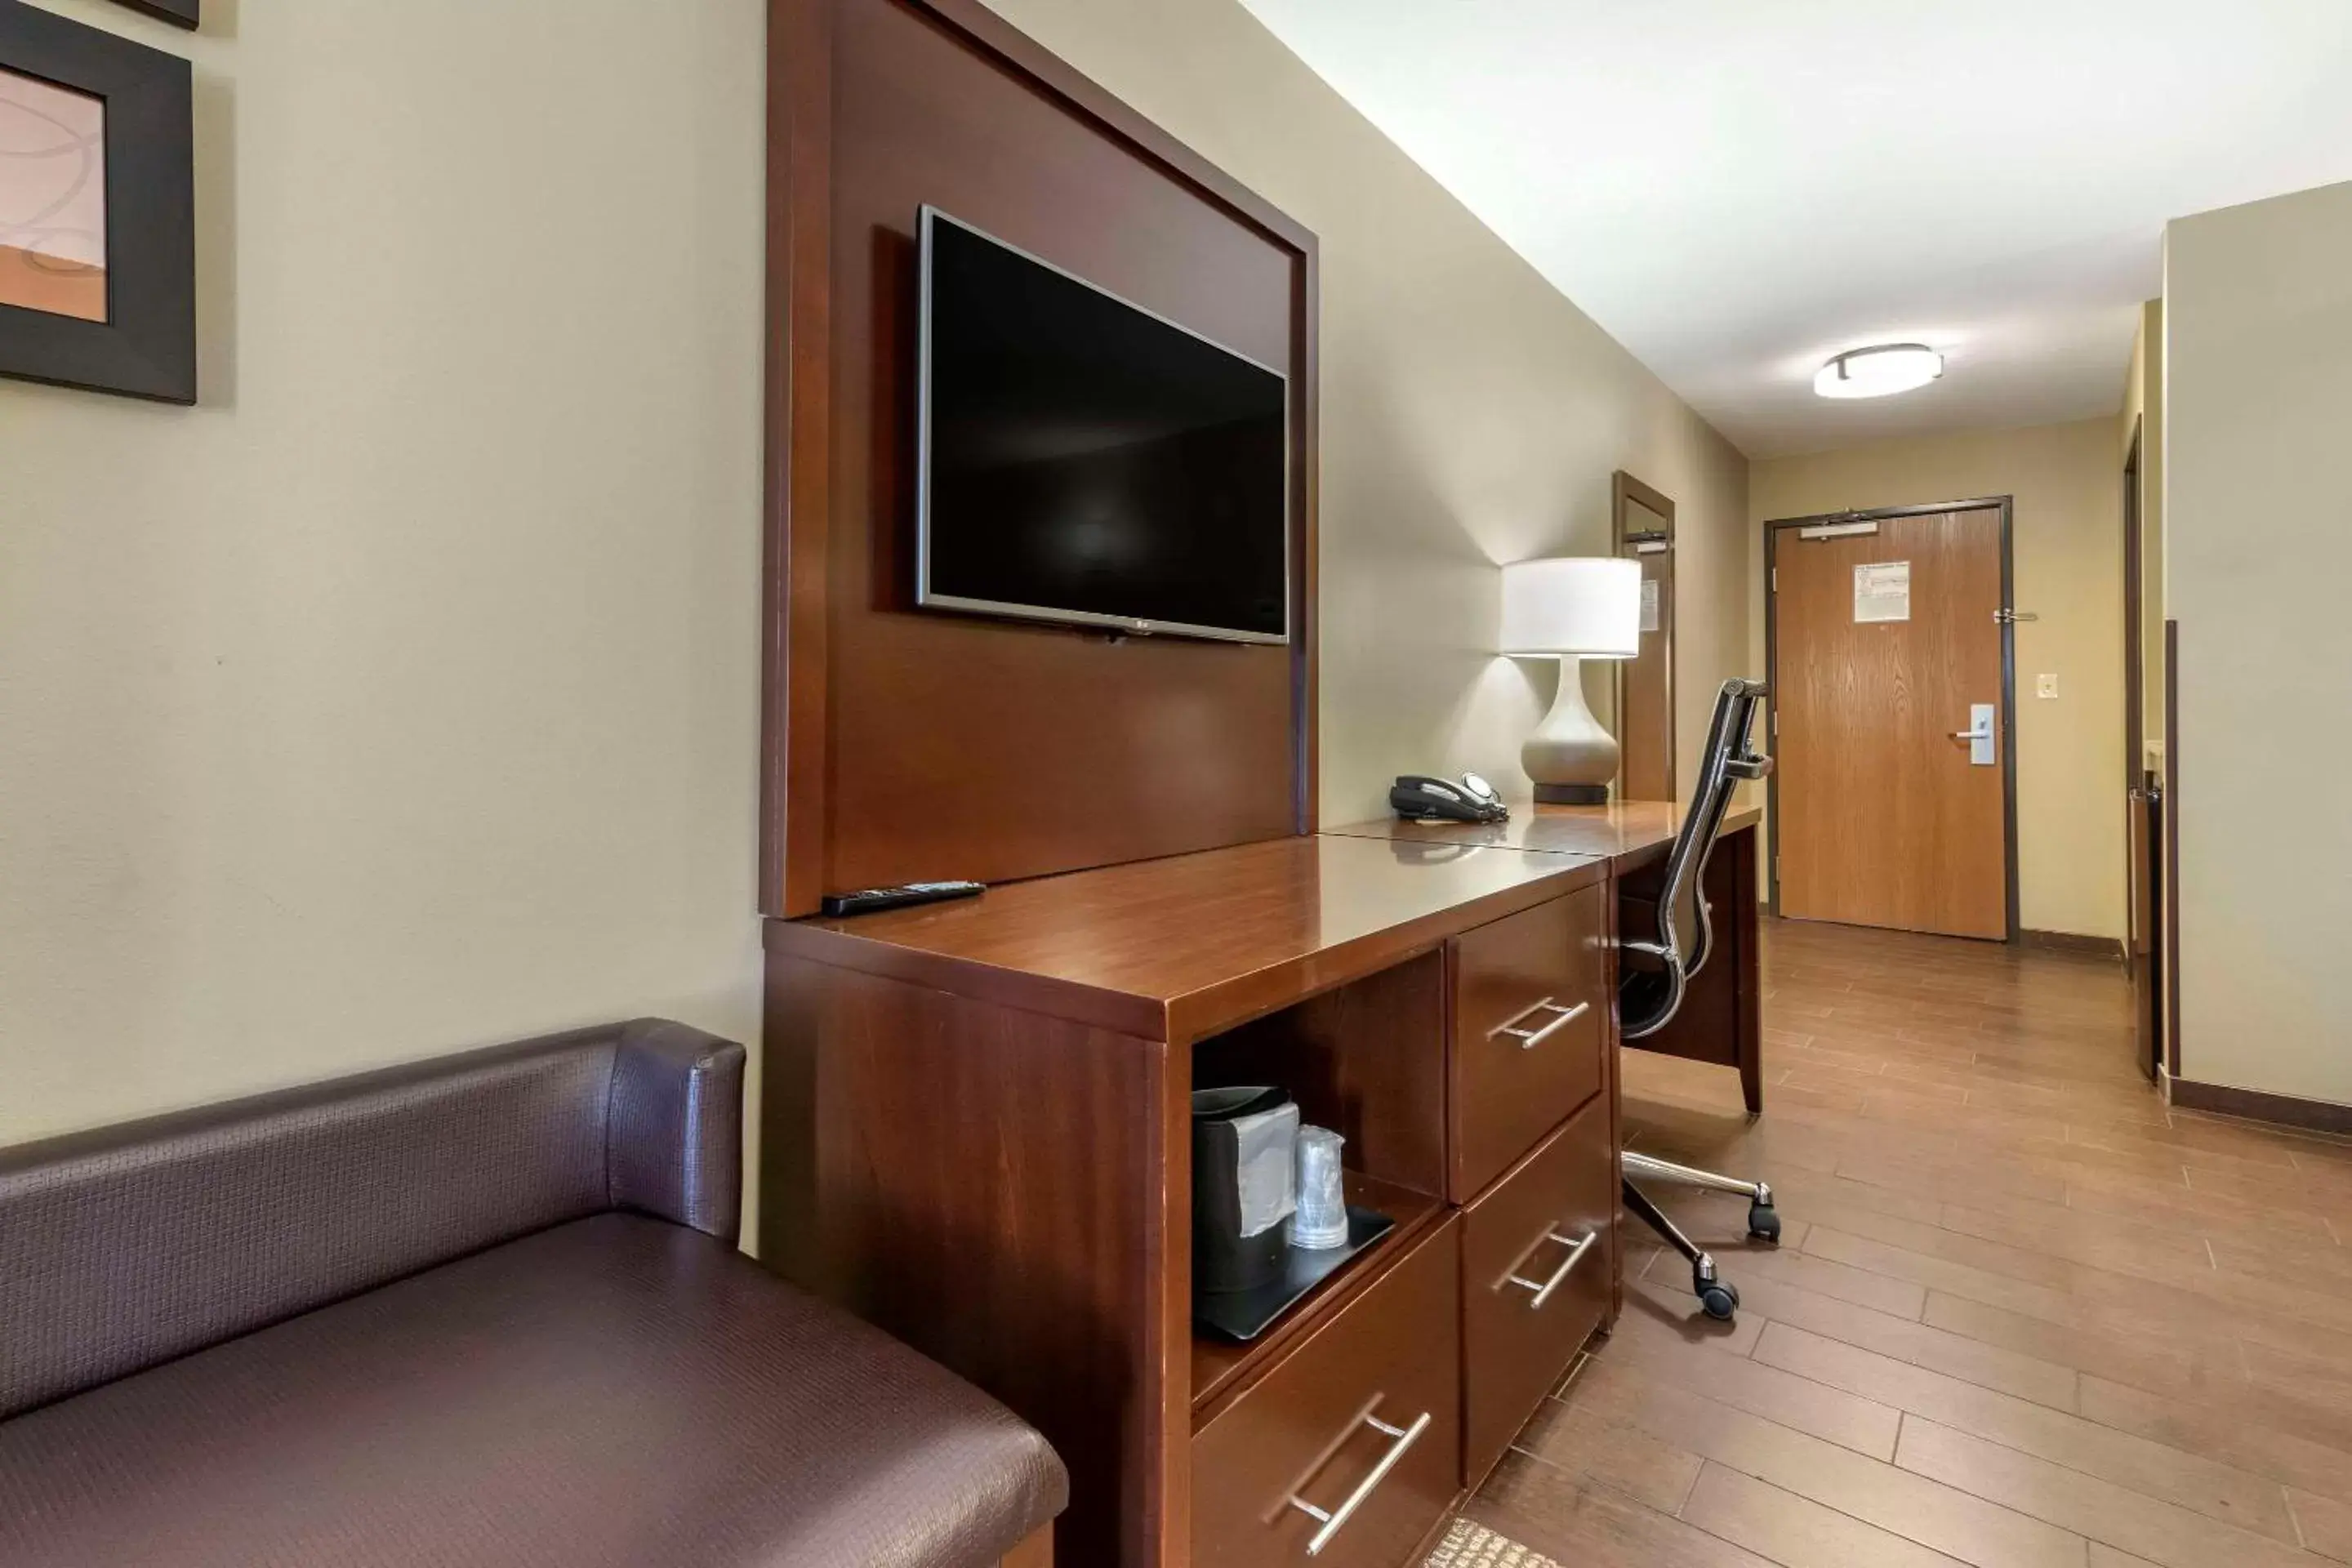 Bedroom, TV/Entertainment Center in Comfort Suites Bridgeport - Clarksburg